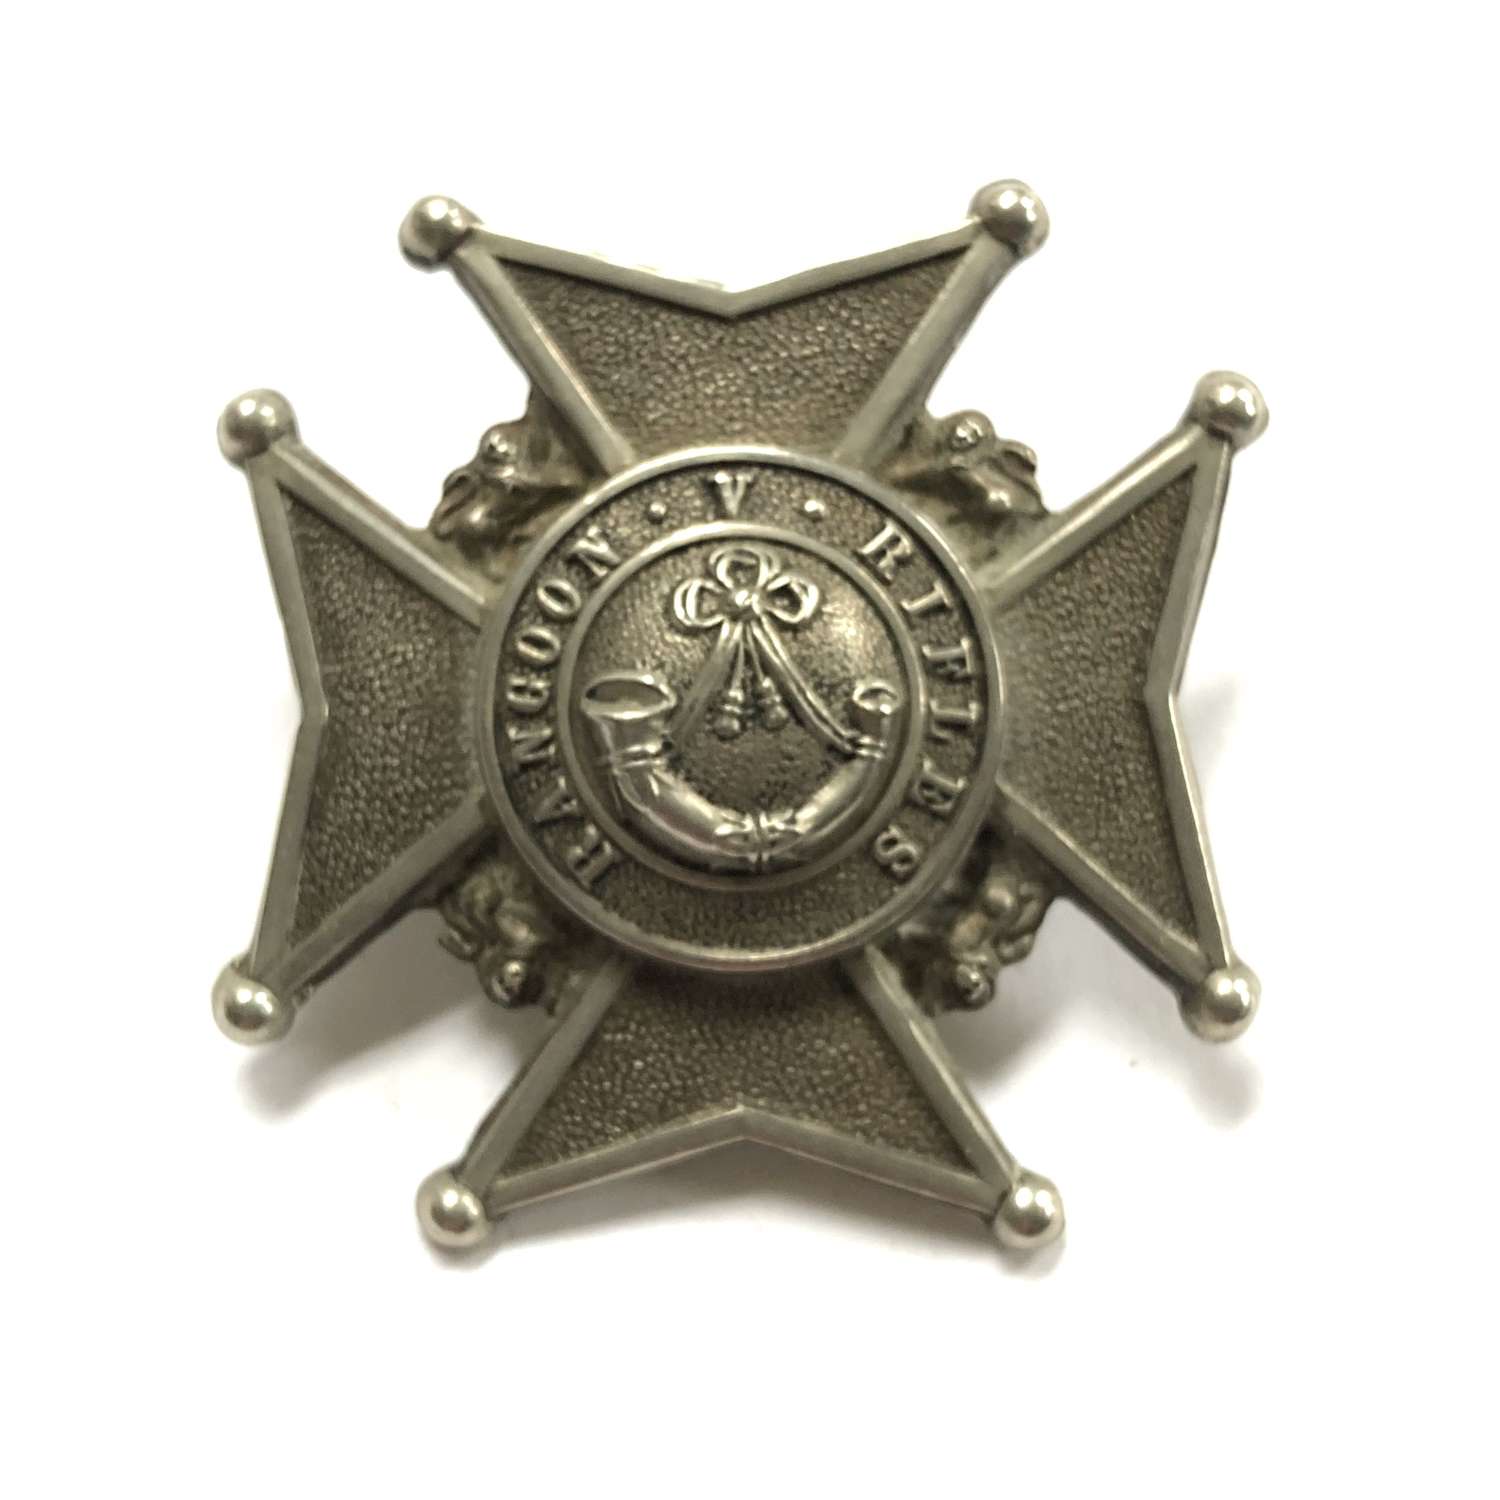 Burma. Rangoon Volunteer Rifles Victorian helmet badge circa 1880